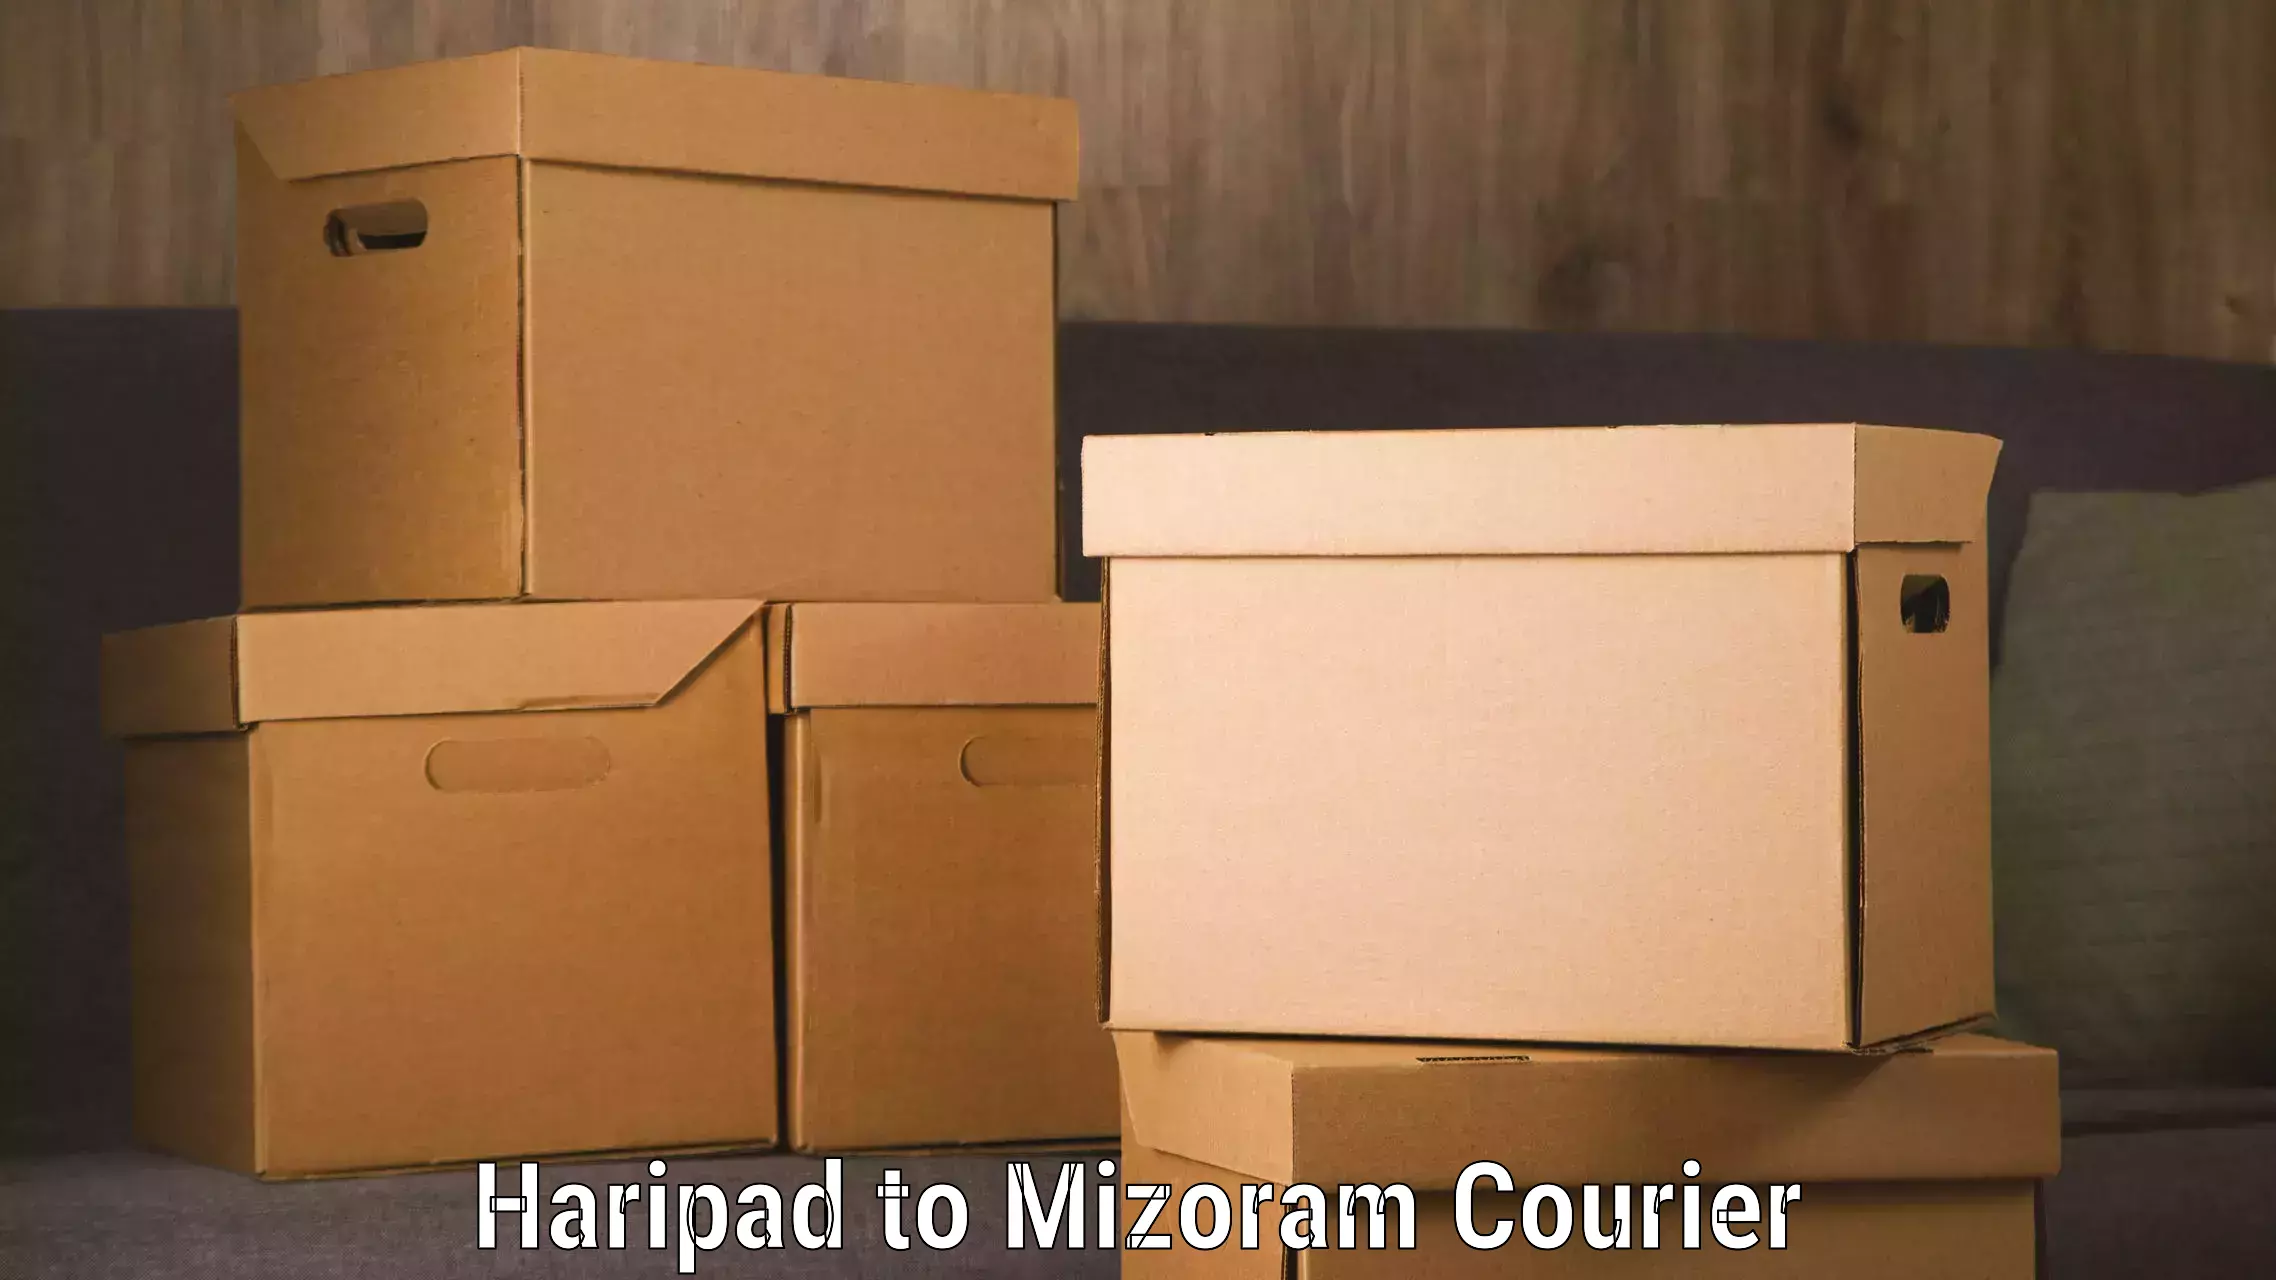 Tracking updates in Haripad to Mizoram